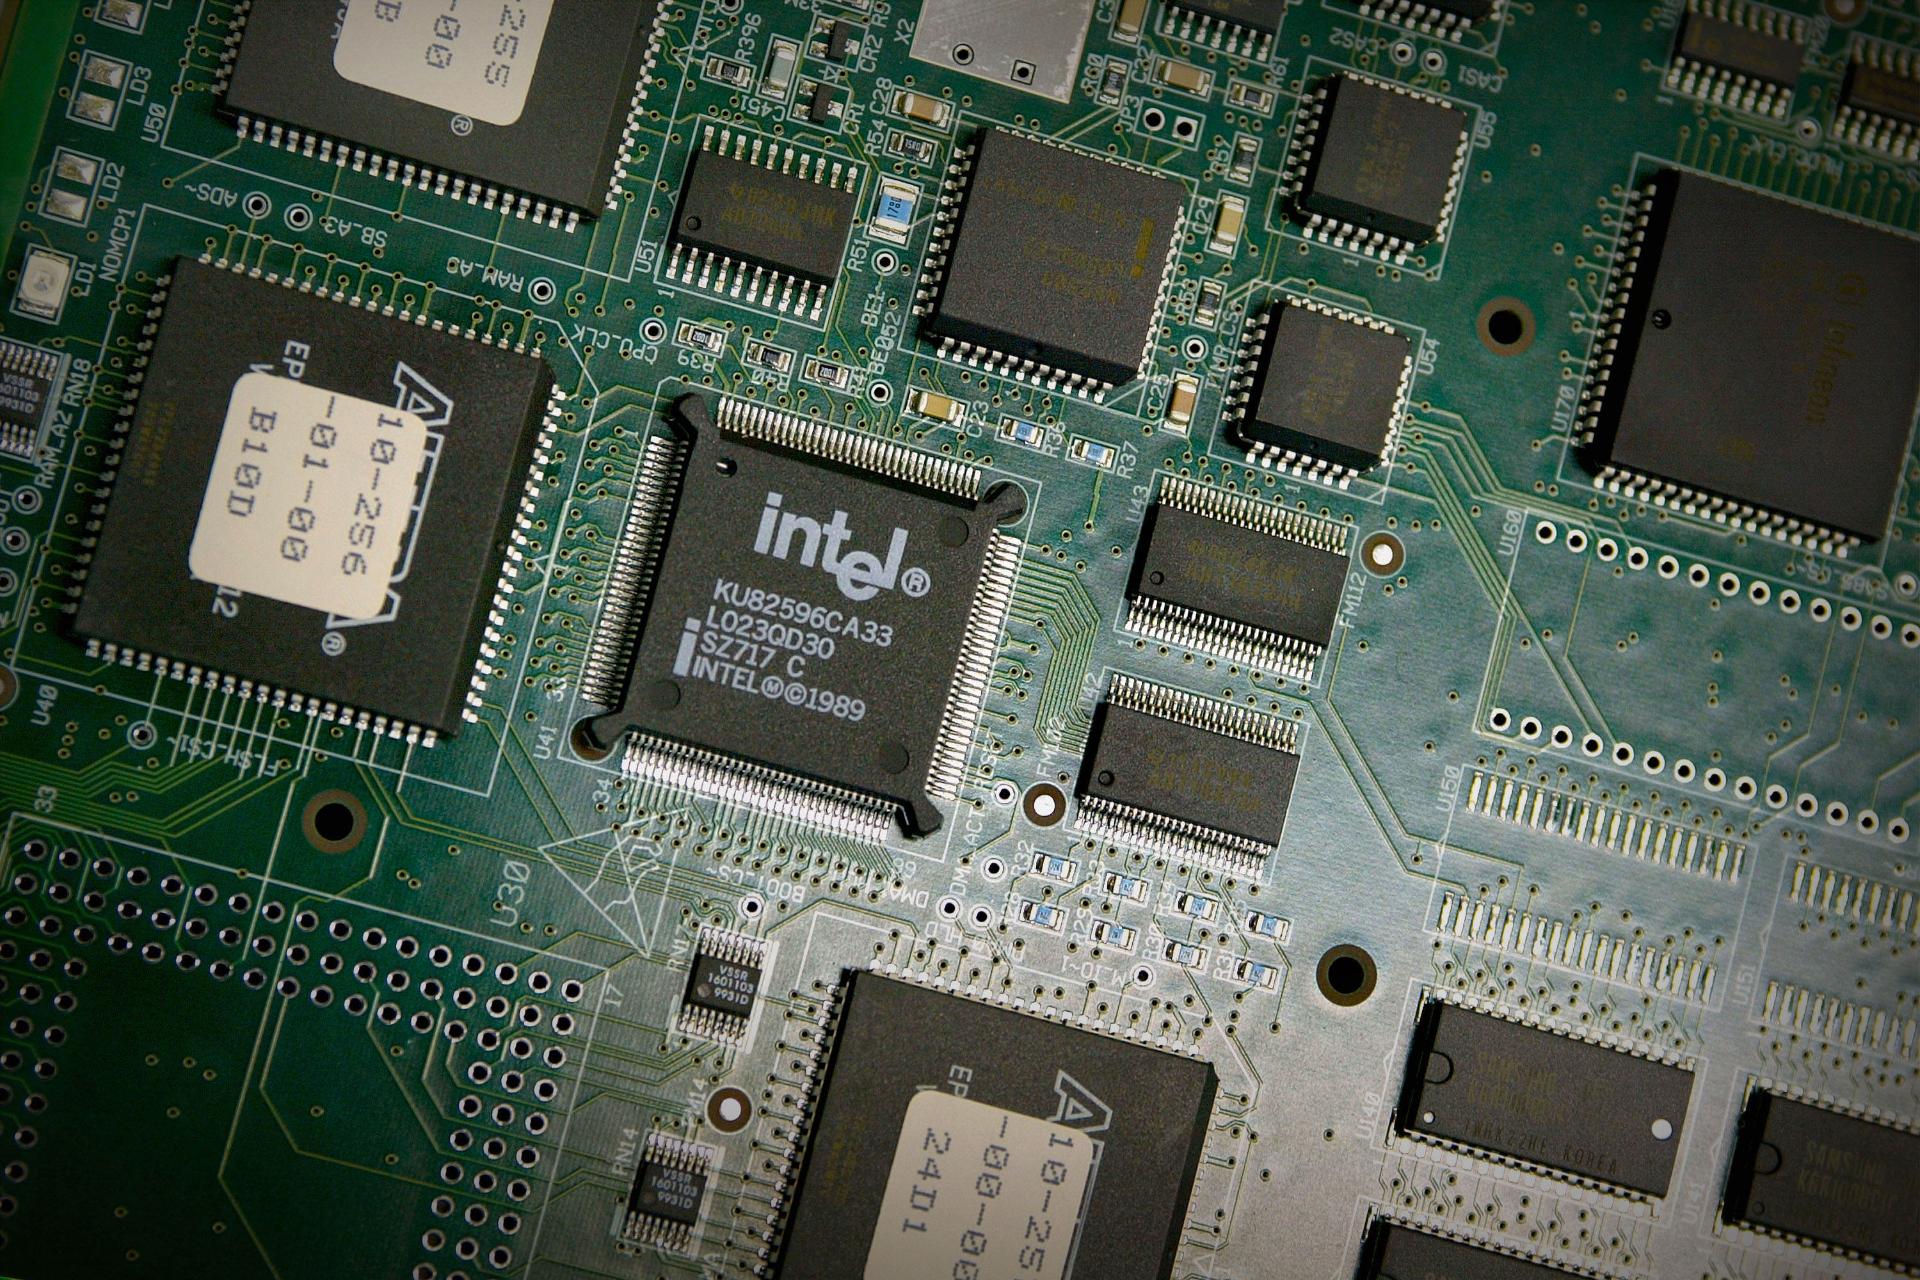 تراشه پردازنده CPU اینتل درون سیستم روی مادربرد از نمای بالا درکنار قطعات دیگر / Intel